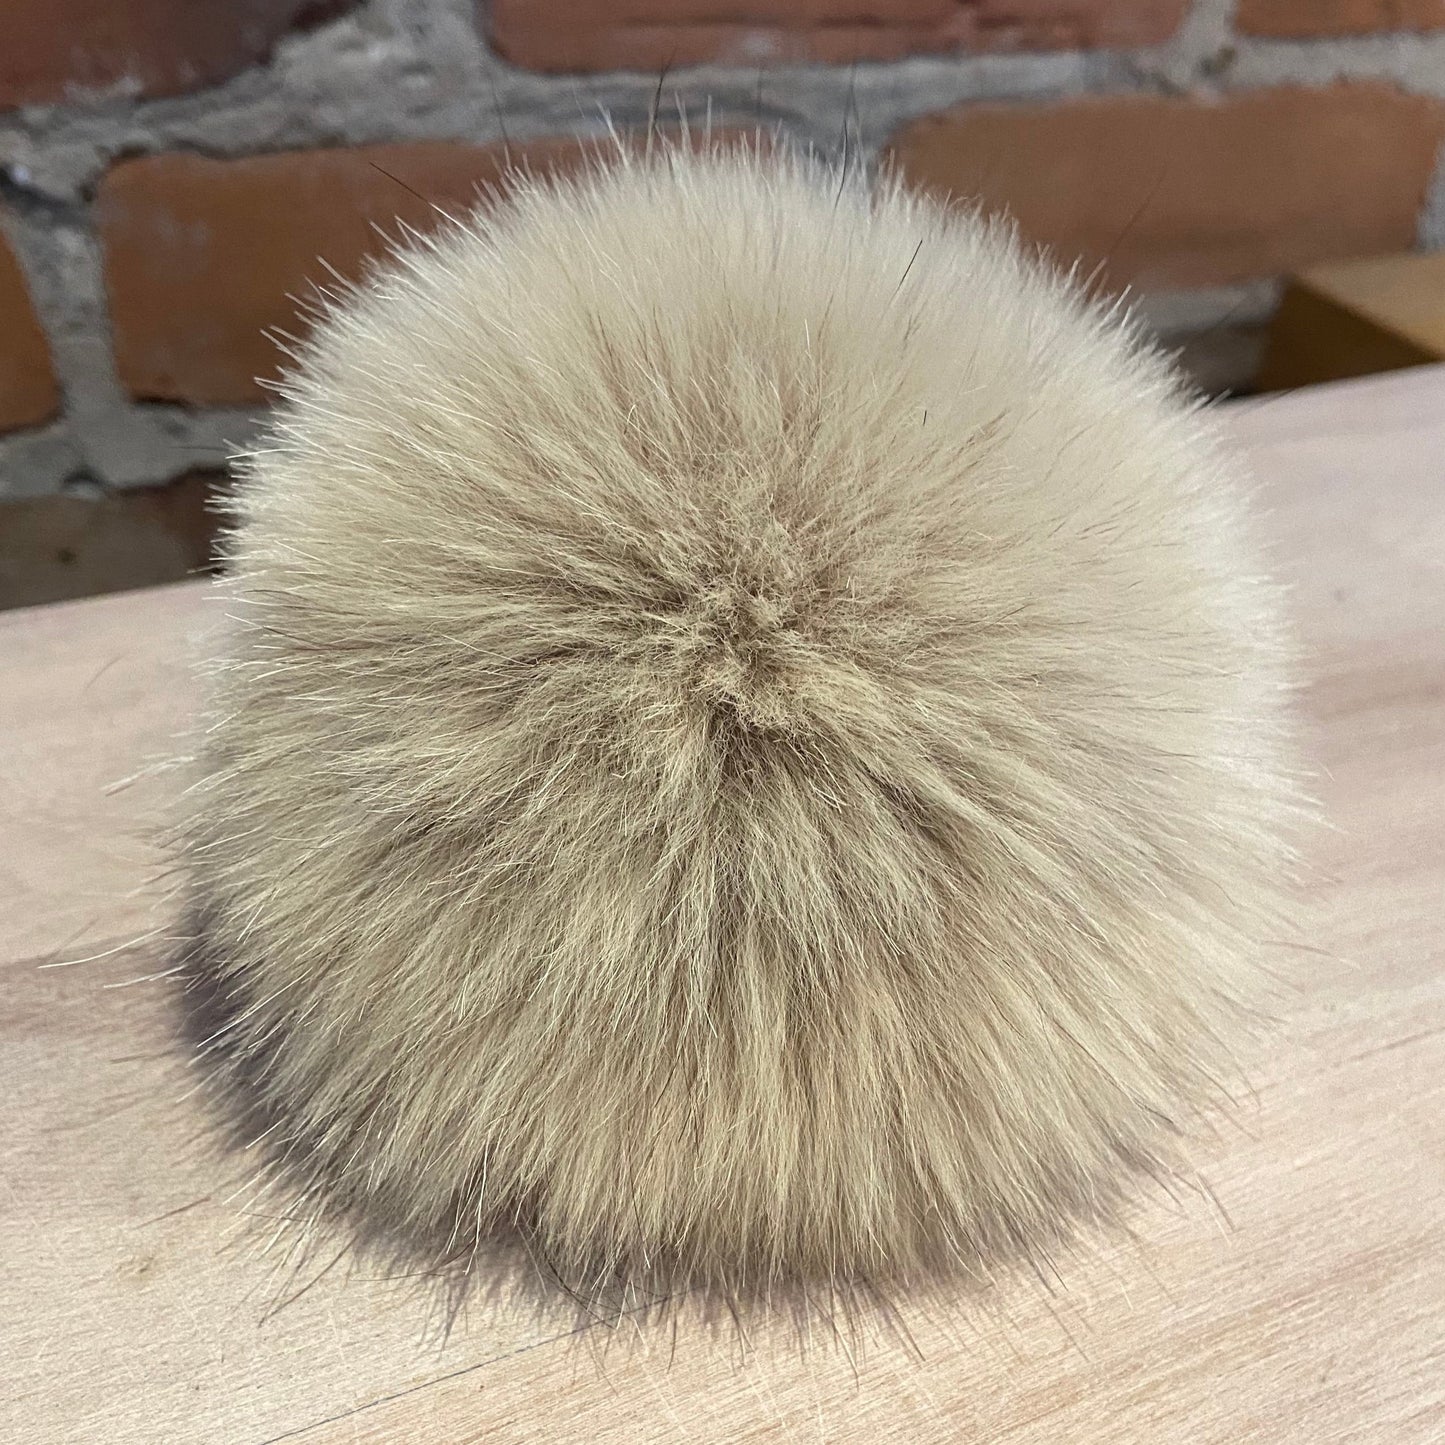 Light Beige Upcycled Vintage Fur Coat Pom Pom for Your Knit Hat